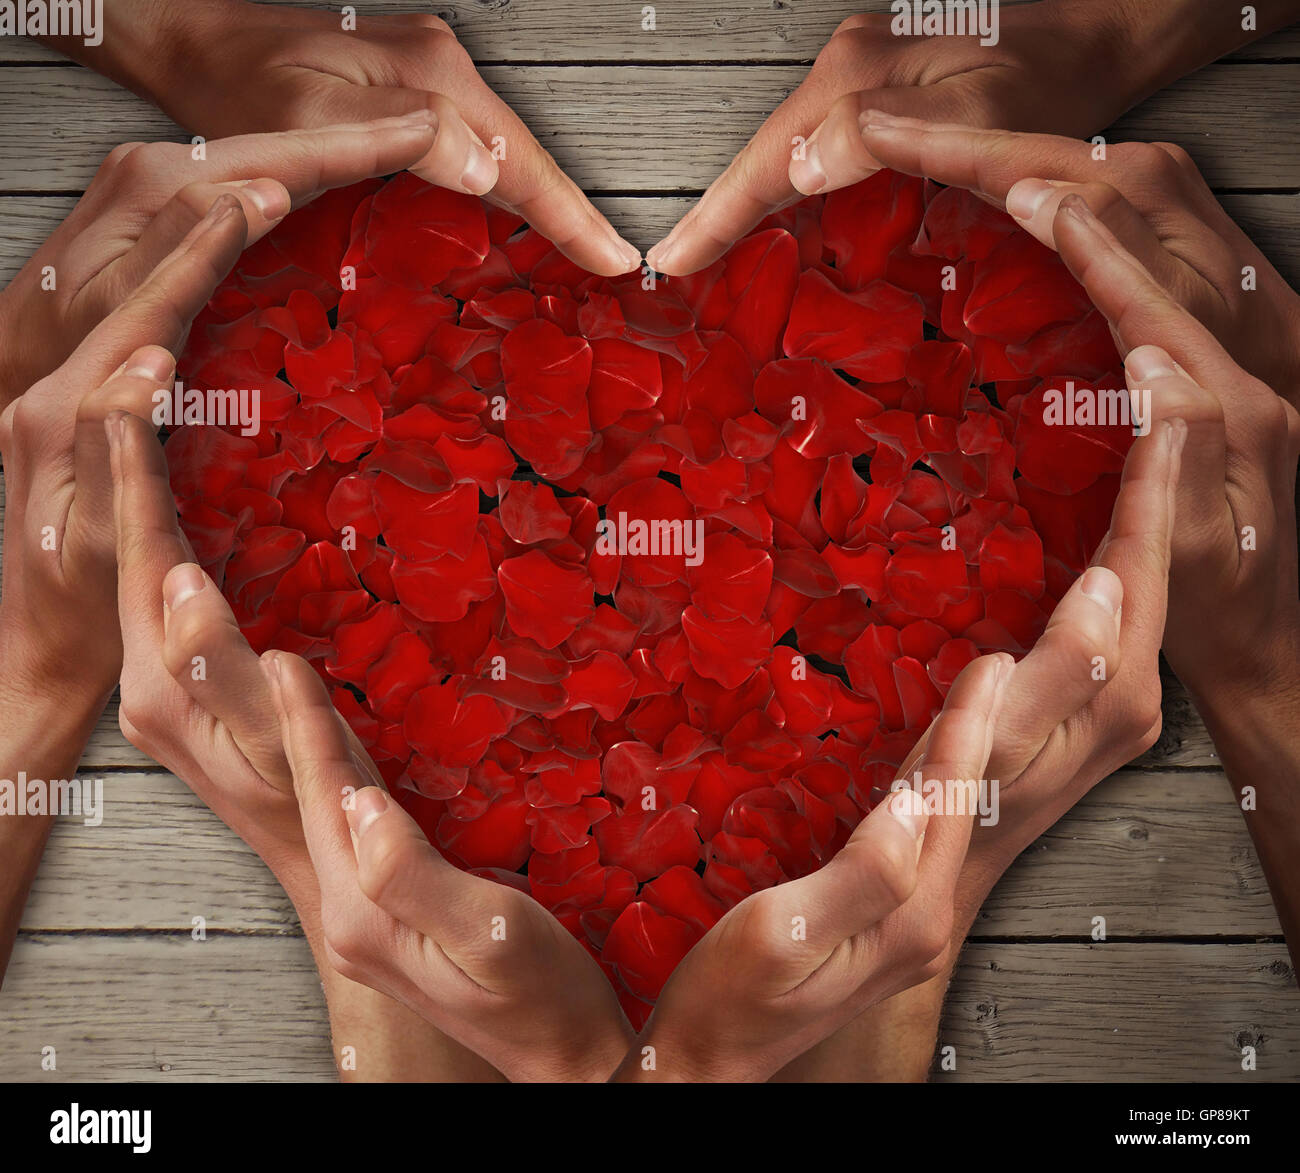 Homme mains disposées en forme de coeur avec des pétales de rose dans le centre sur une table en bois. Concept d'amour Banque D'Images